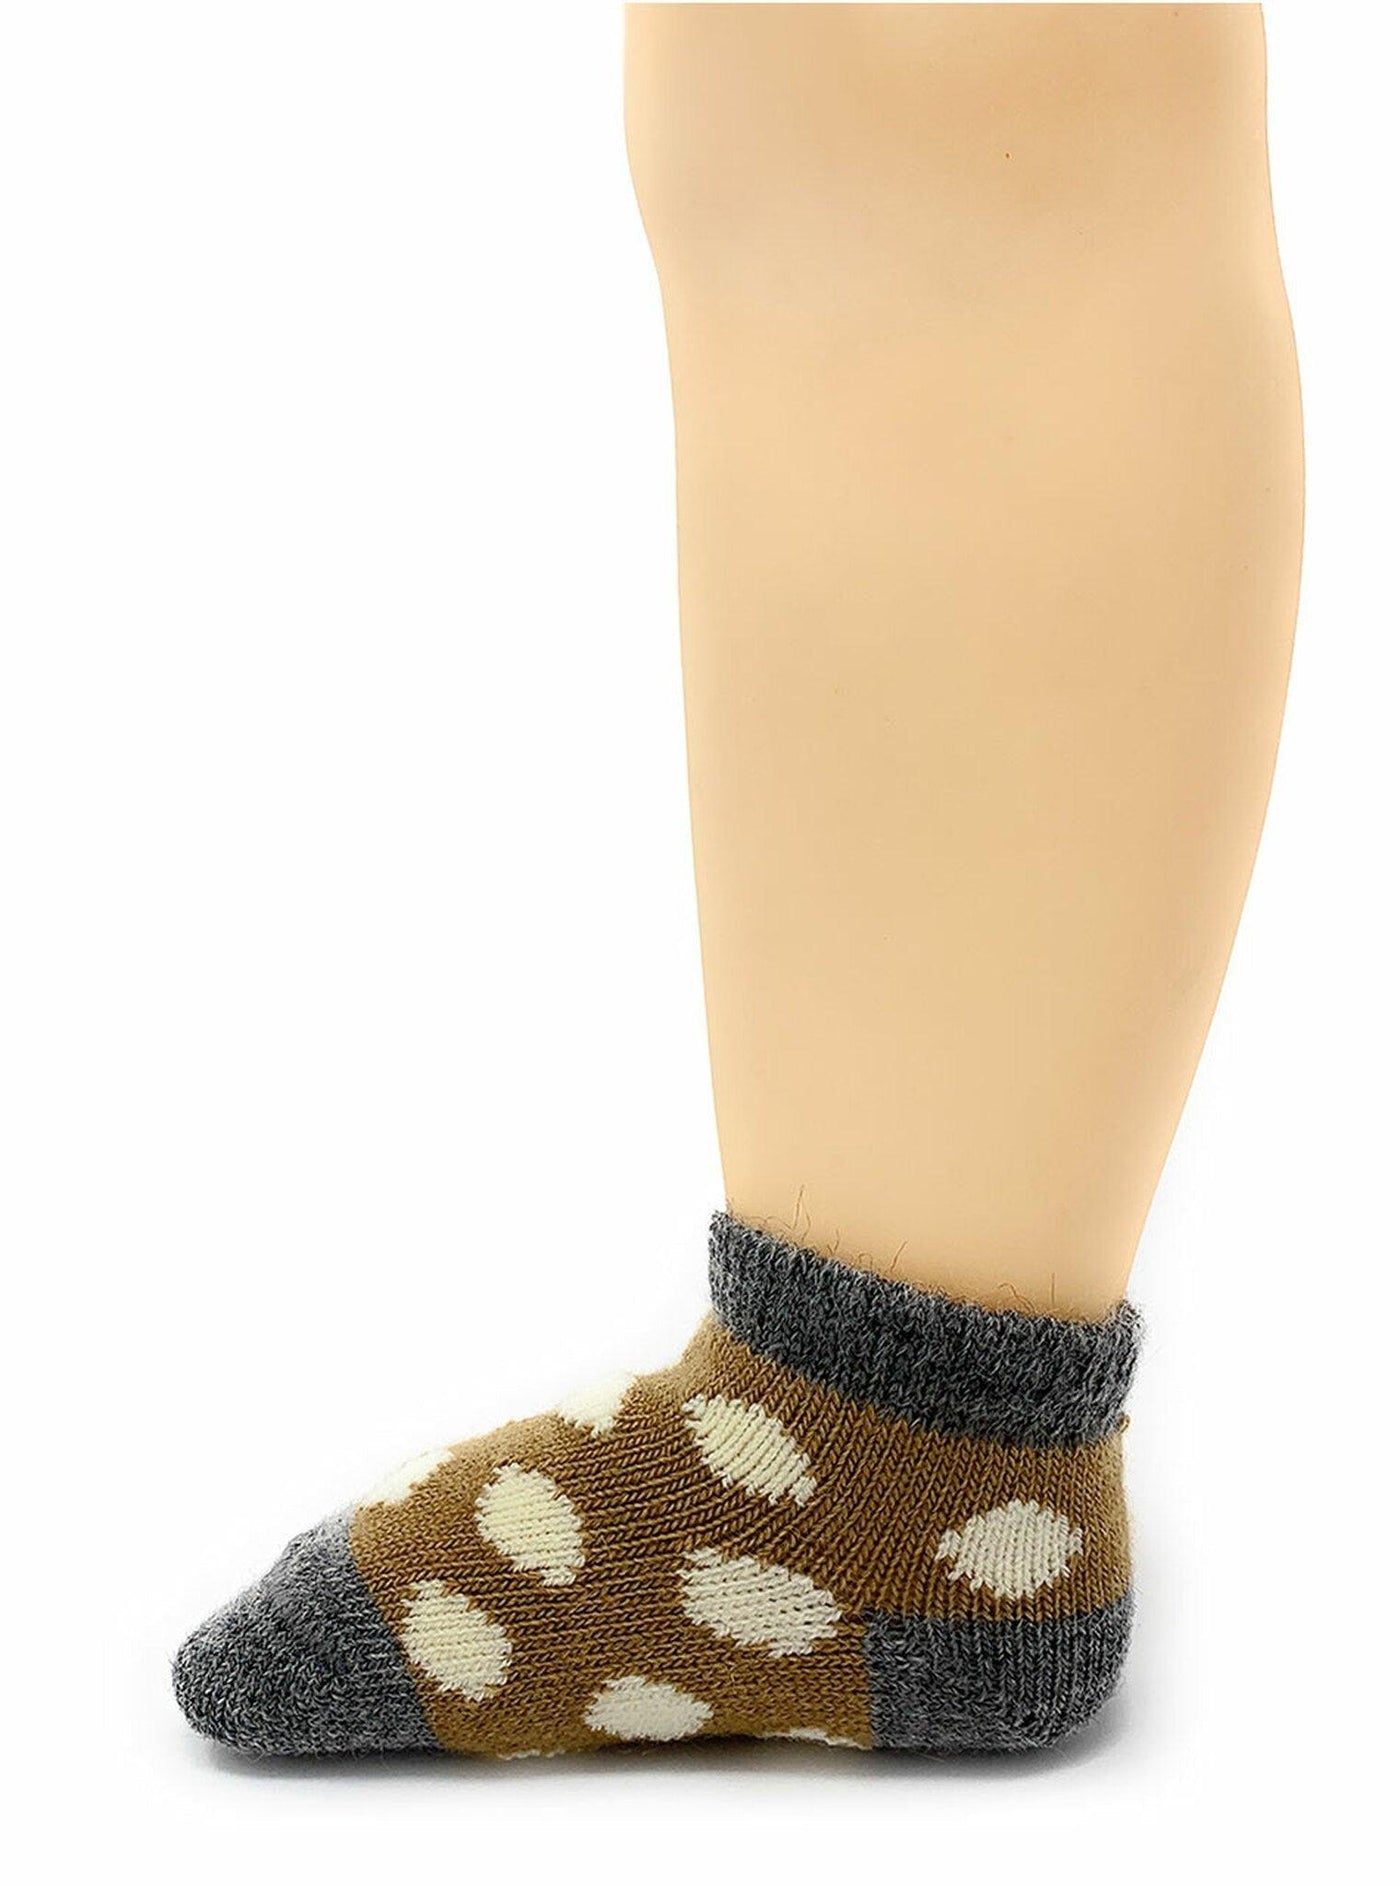 Baby Alpaca "Spot-On" Infant & Toddler Ankle Socks - Warrior Alpaca - The Sock Monster